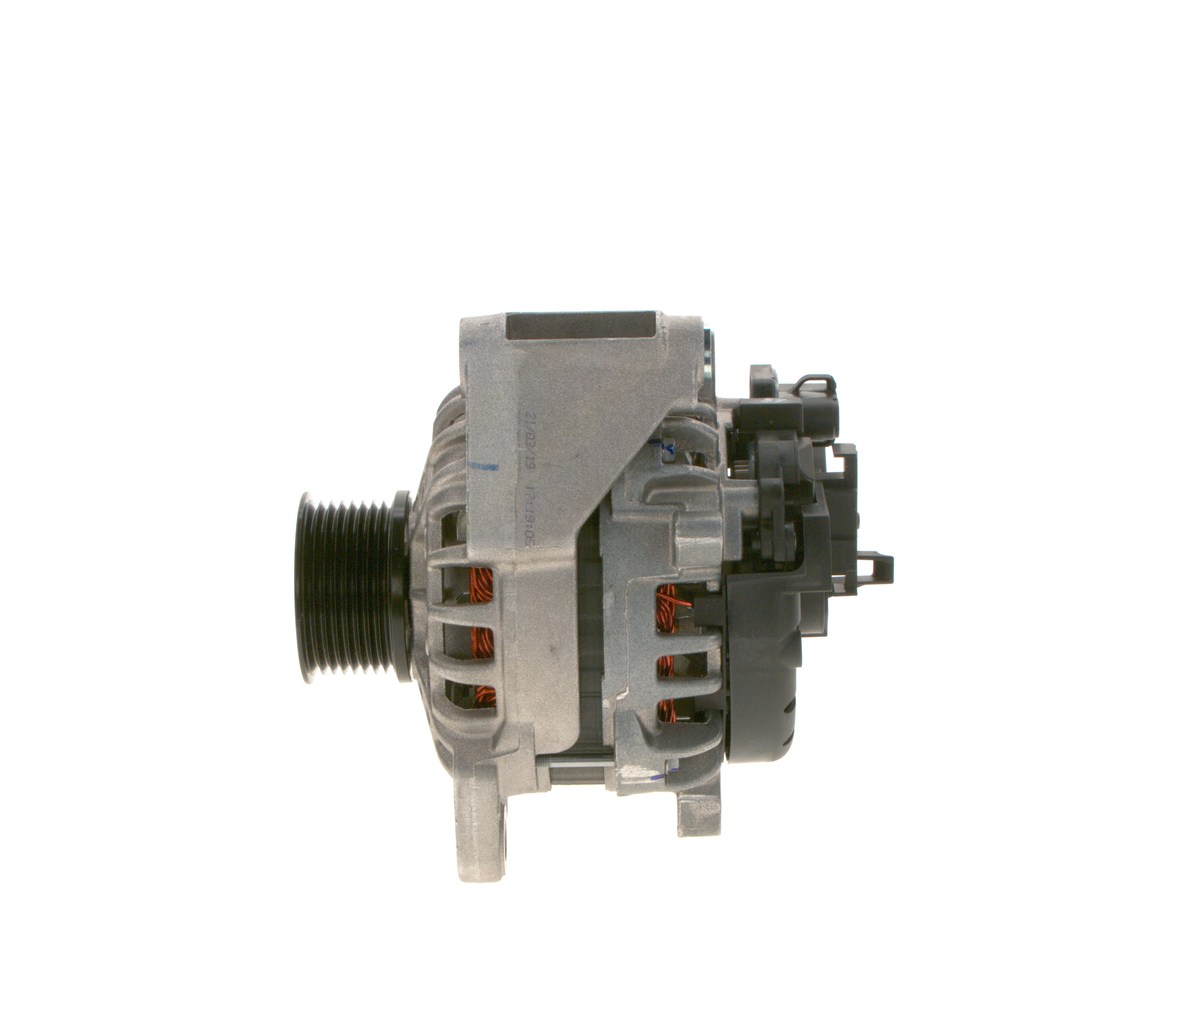 C 5M-80 28V BOSCH 28V, 80A, excl. vacuum pump, Ø 61 mm Generator F 000 BL0 7N2 buy